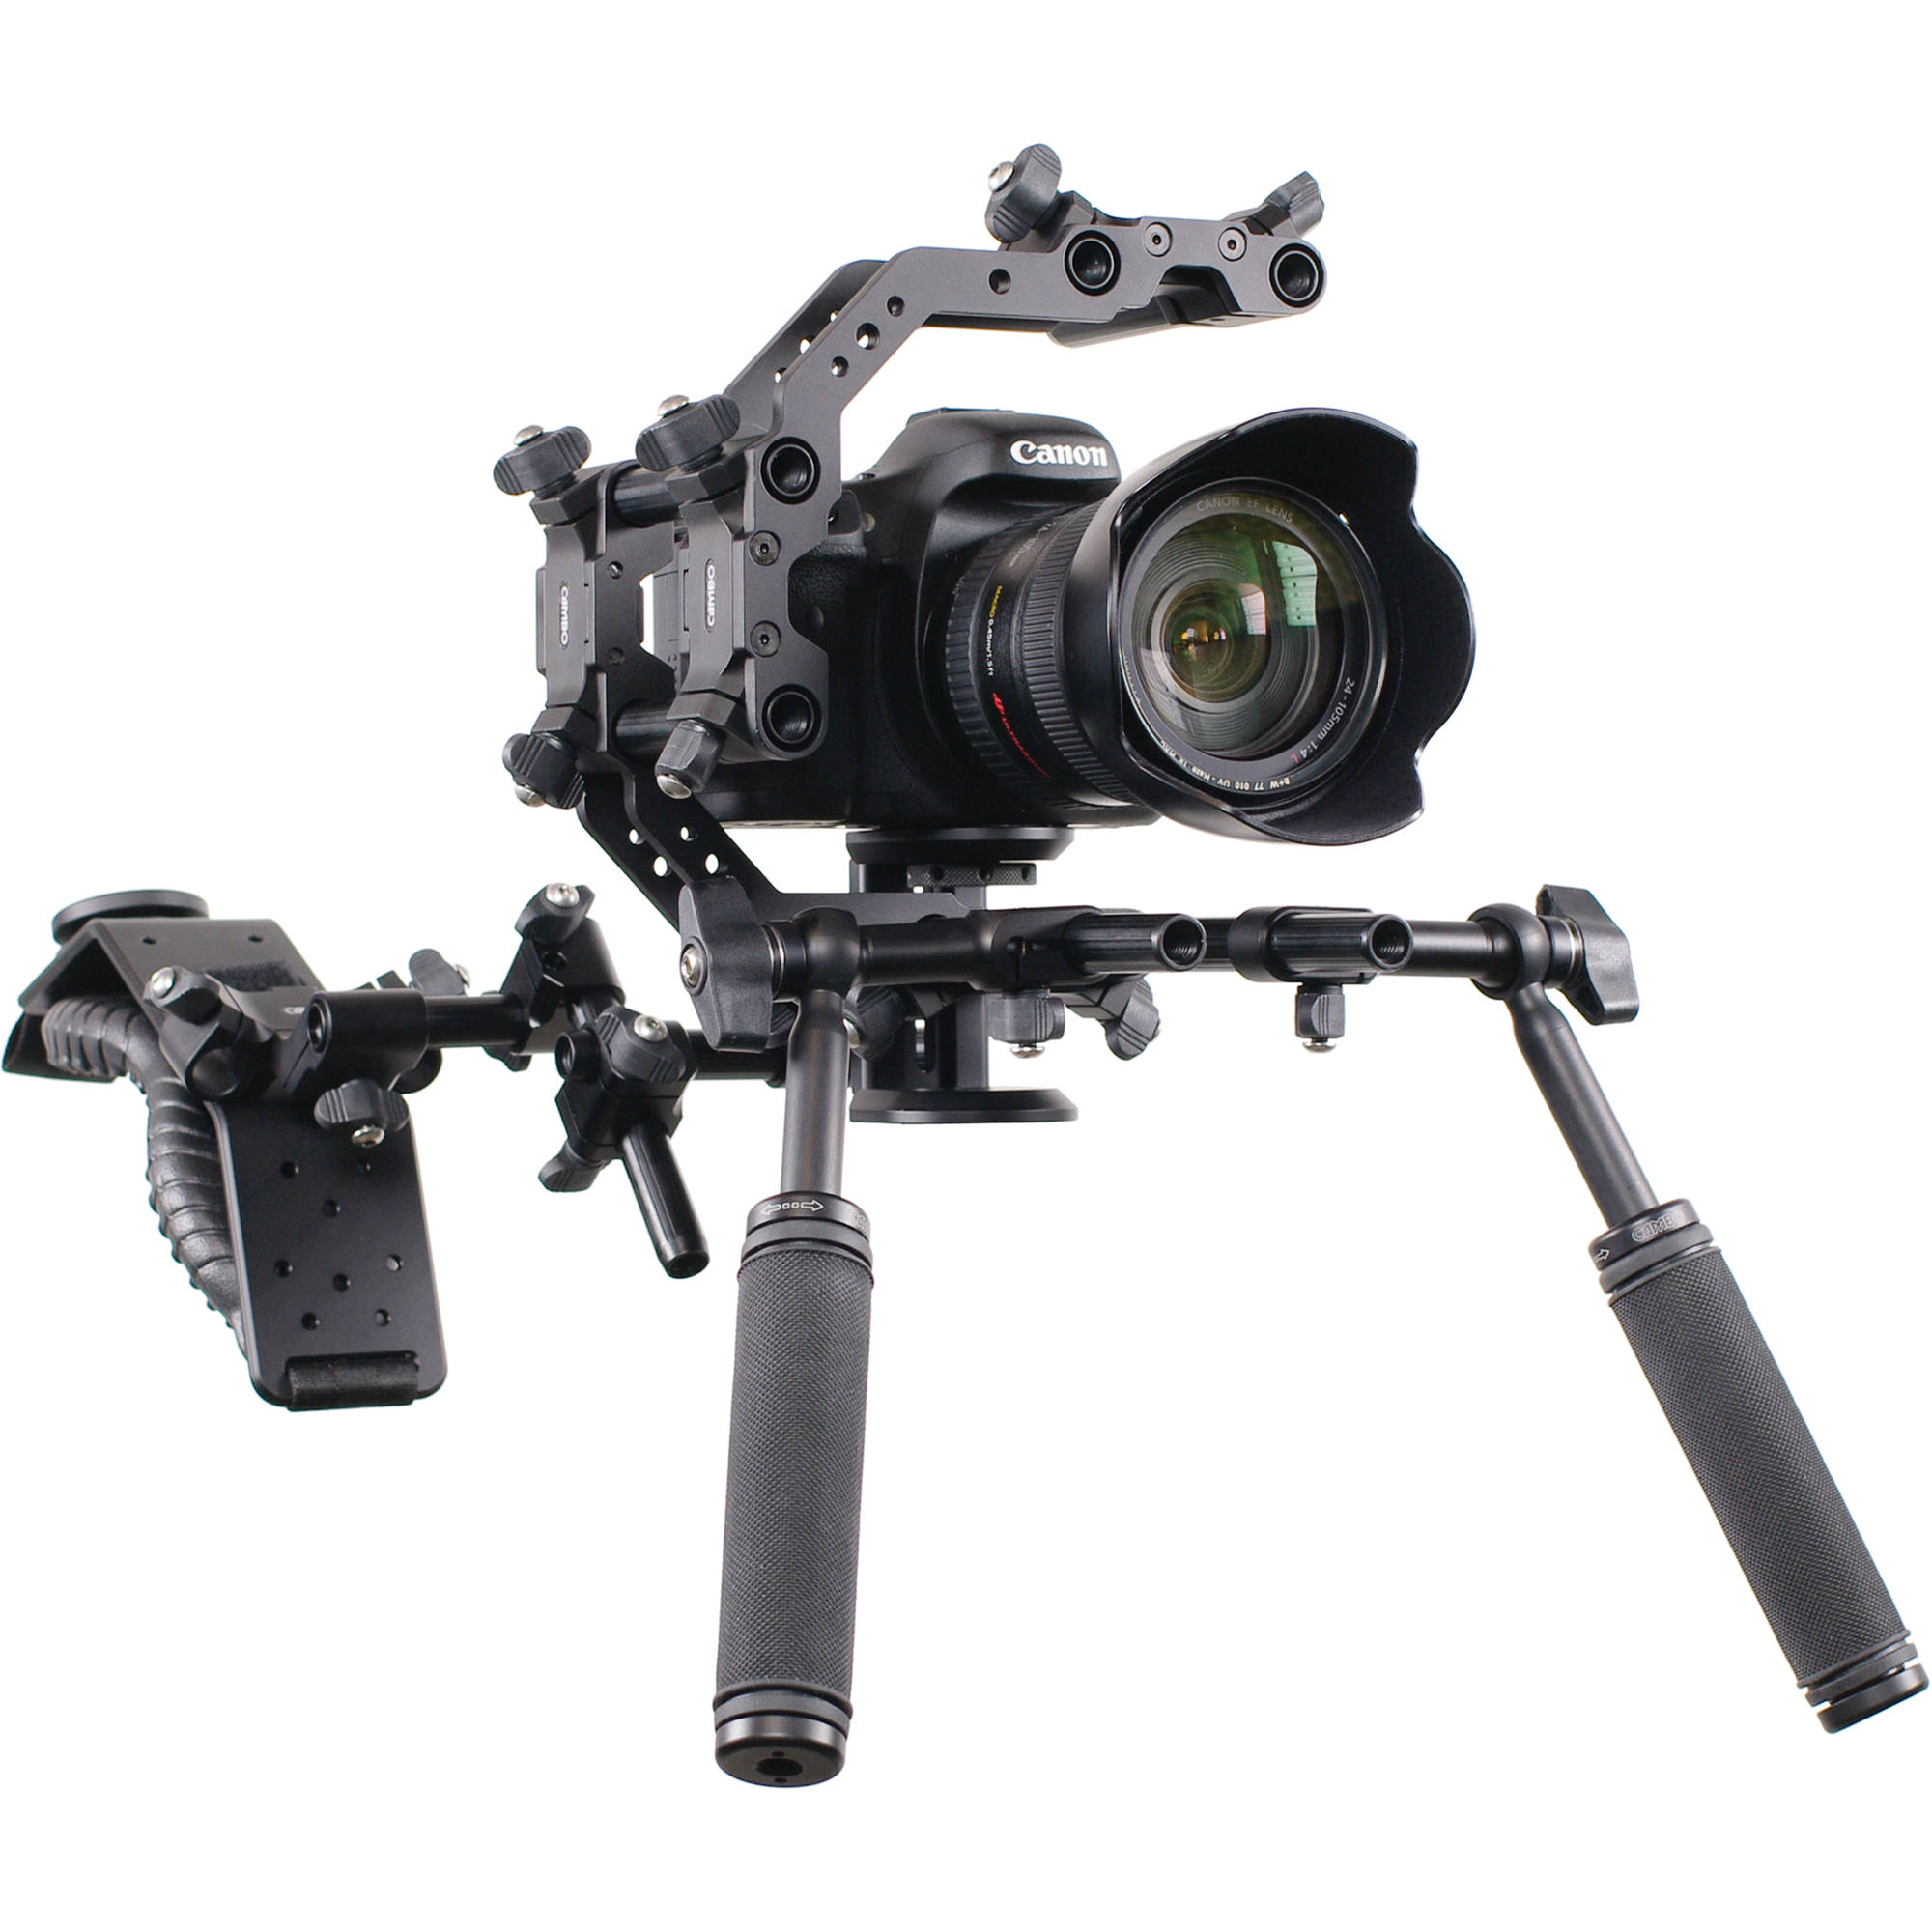 Камера CS-100. Риг для камеры. Универсальная риг для камеры. Видеооборудование.